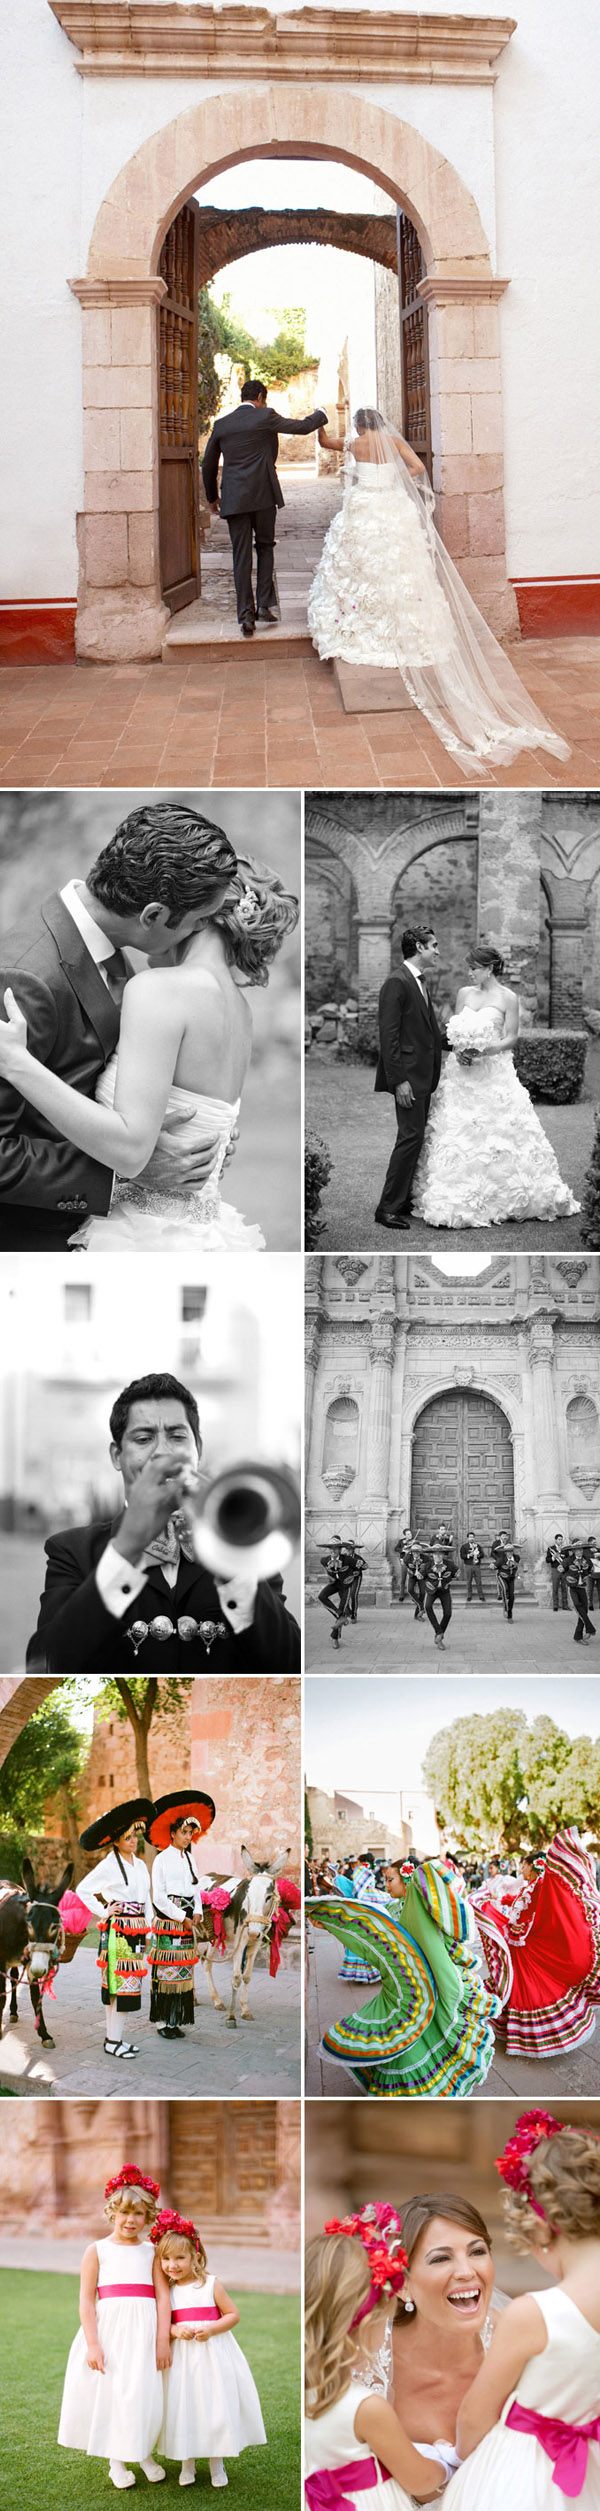 Regina & Zaheen: boda en Zacatecas mexico_5_600x2511 